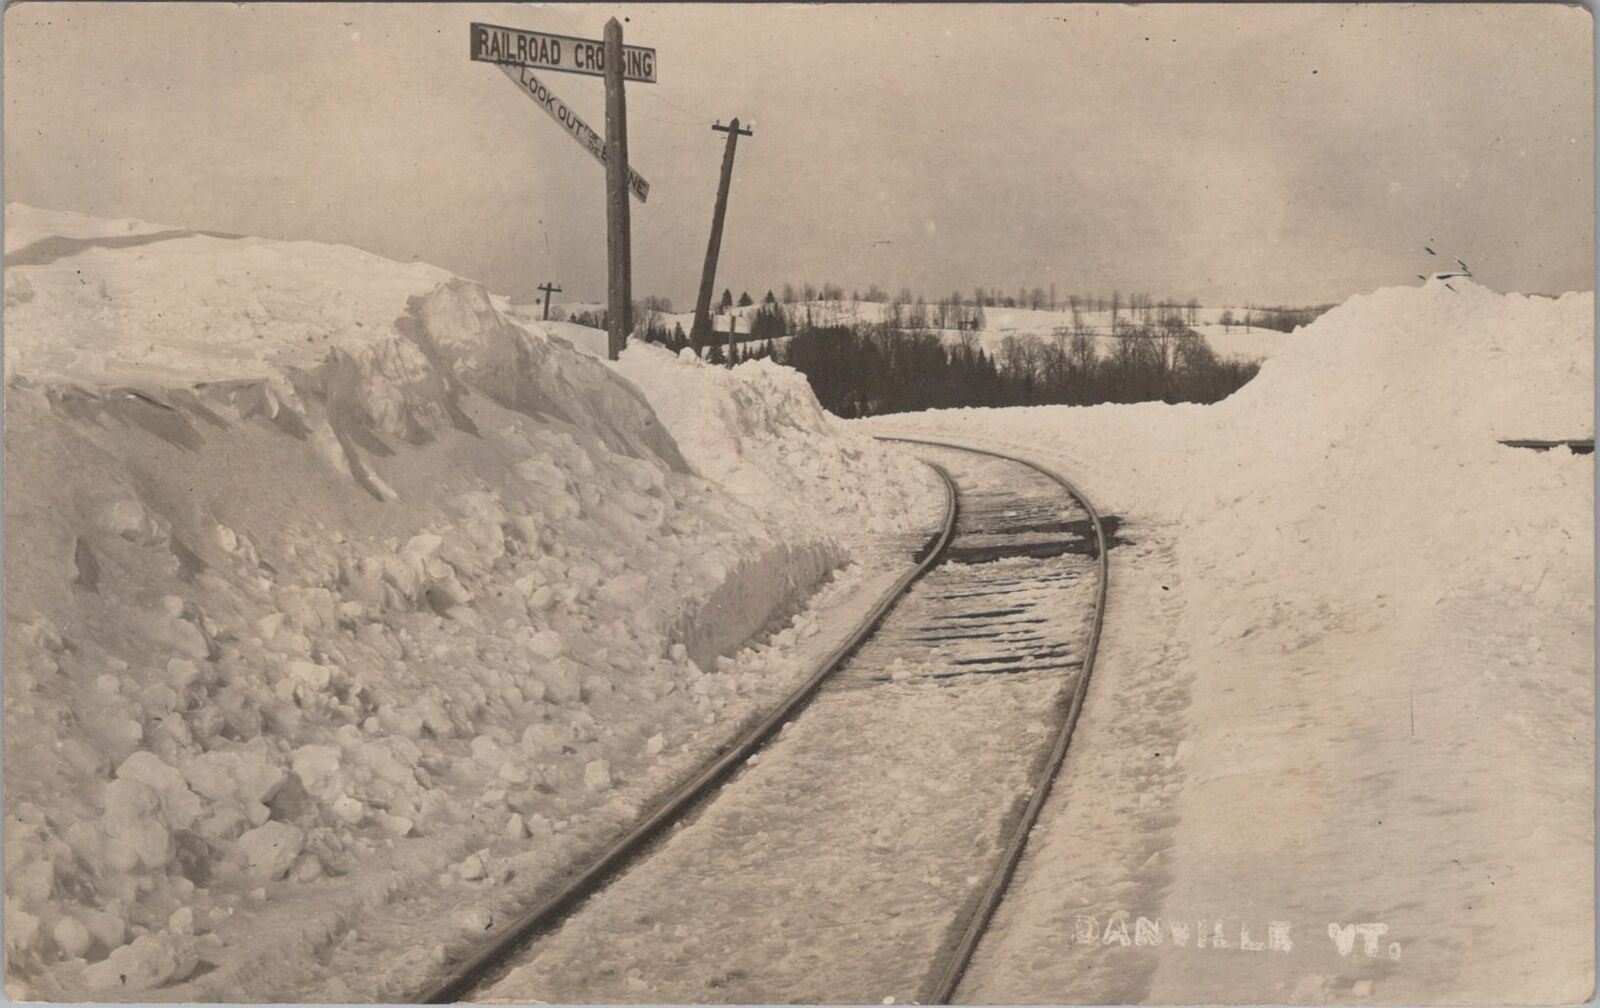 Railroad Crossing Winter Snow Scene Danville Vermont RPPC c1910s Postcard